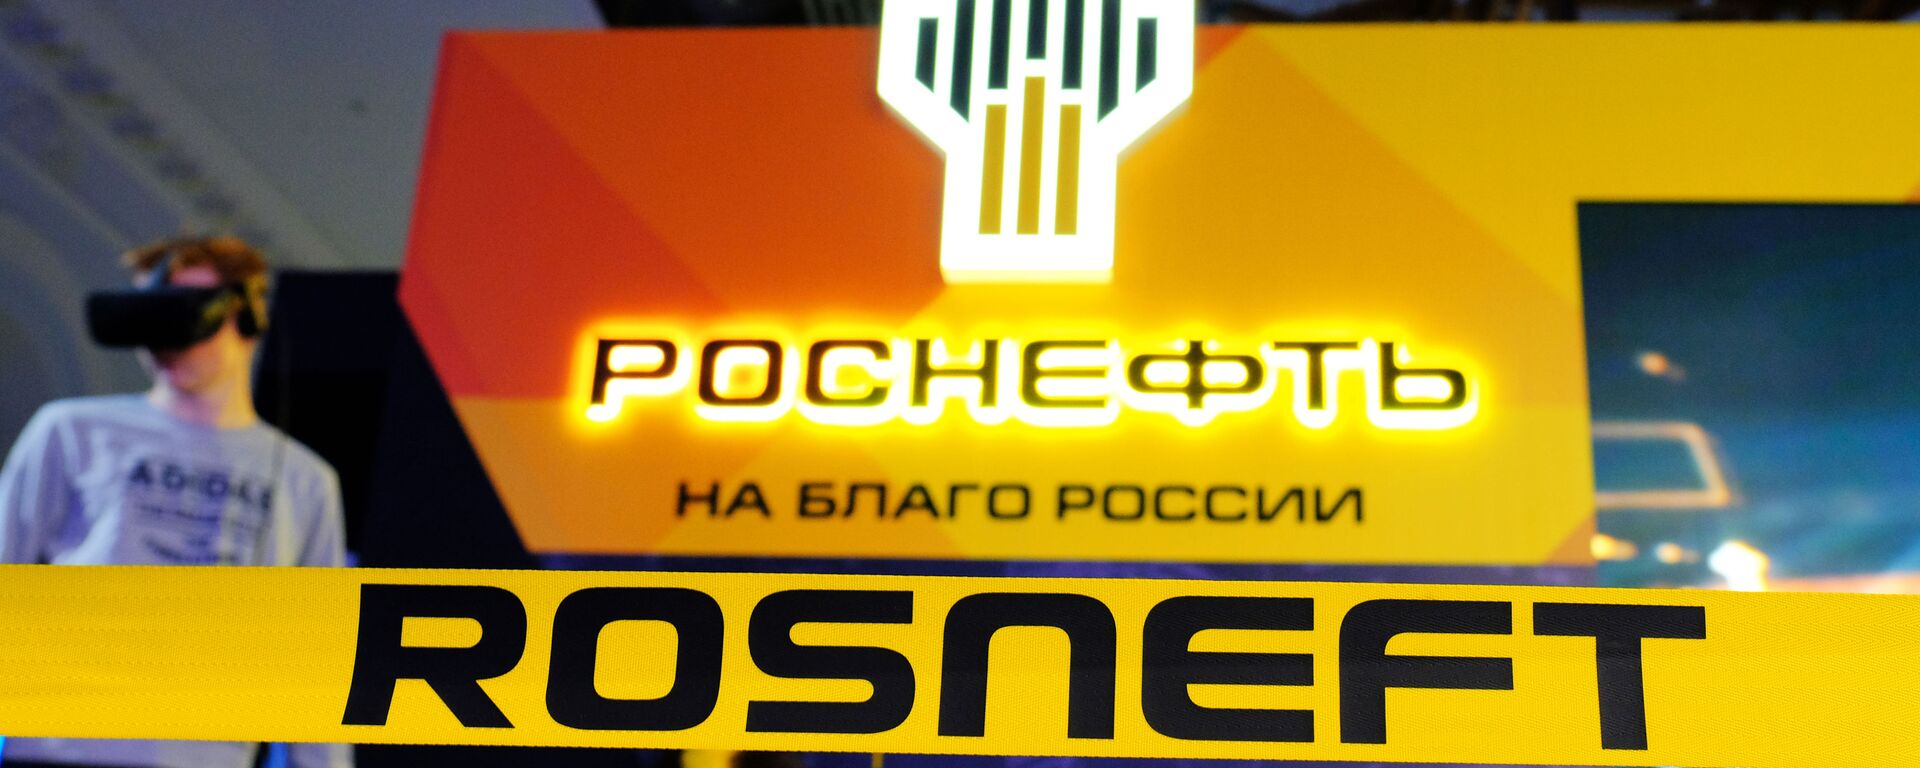 Logo de Rosneft - Sputnik Mundo, 1920, 09.12.2020